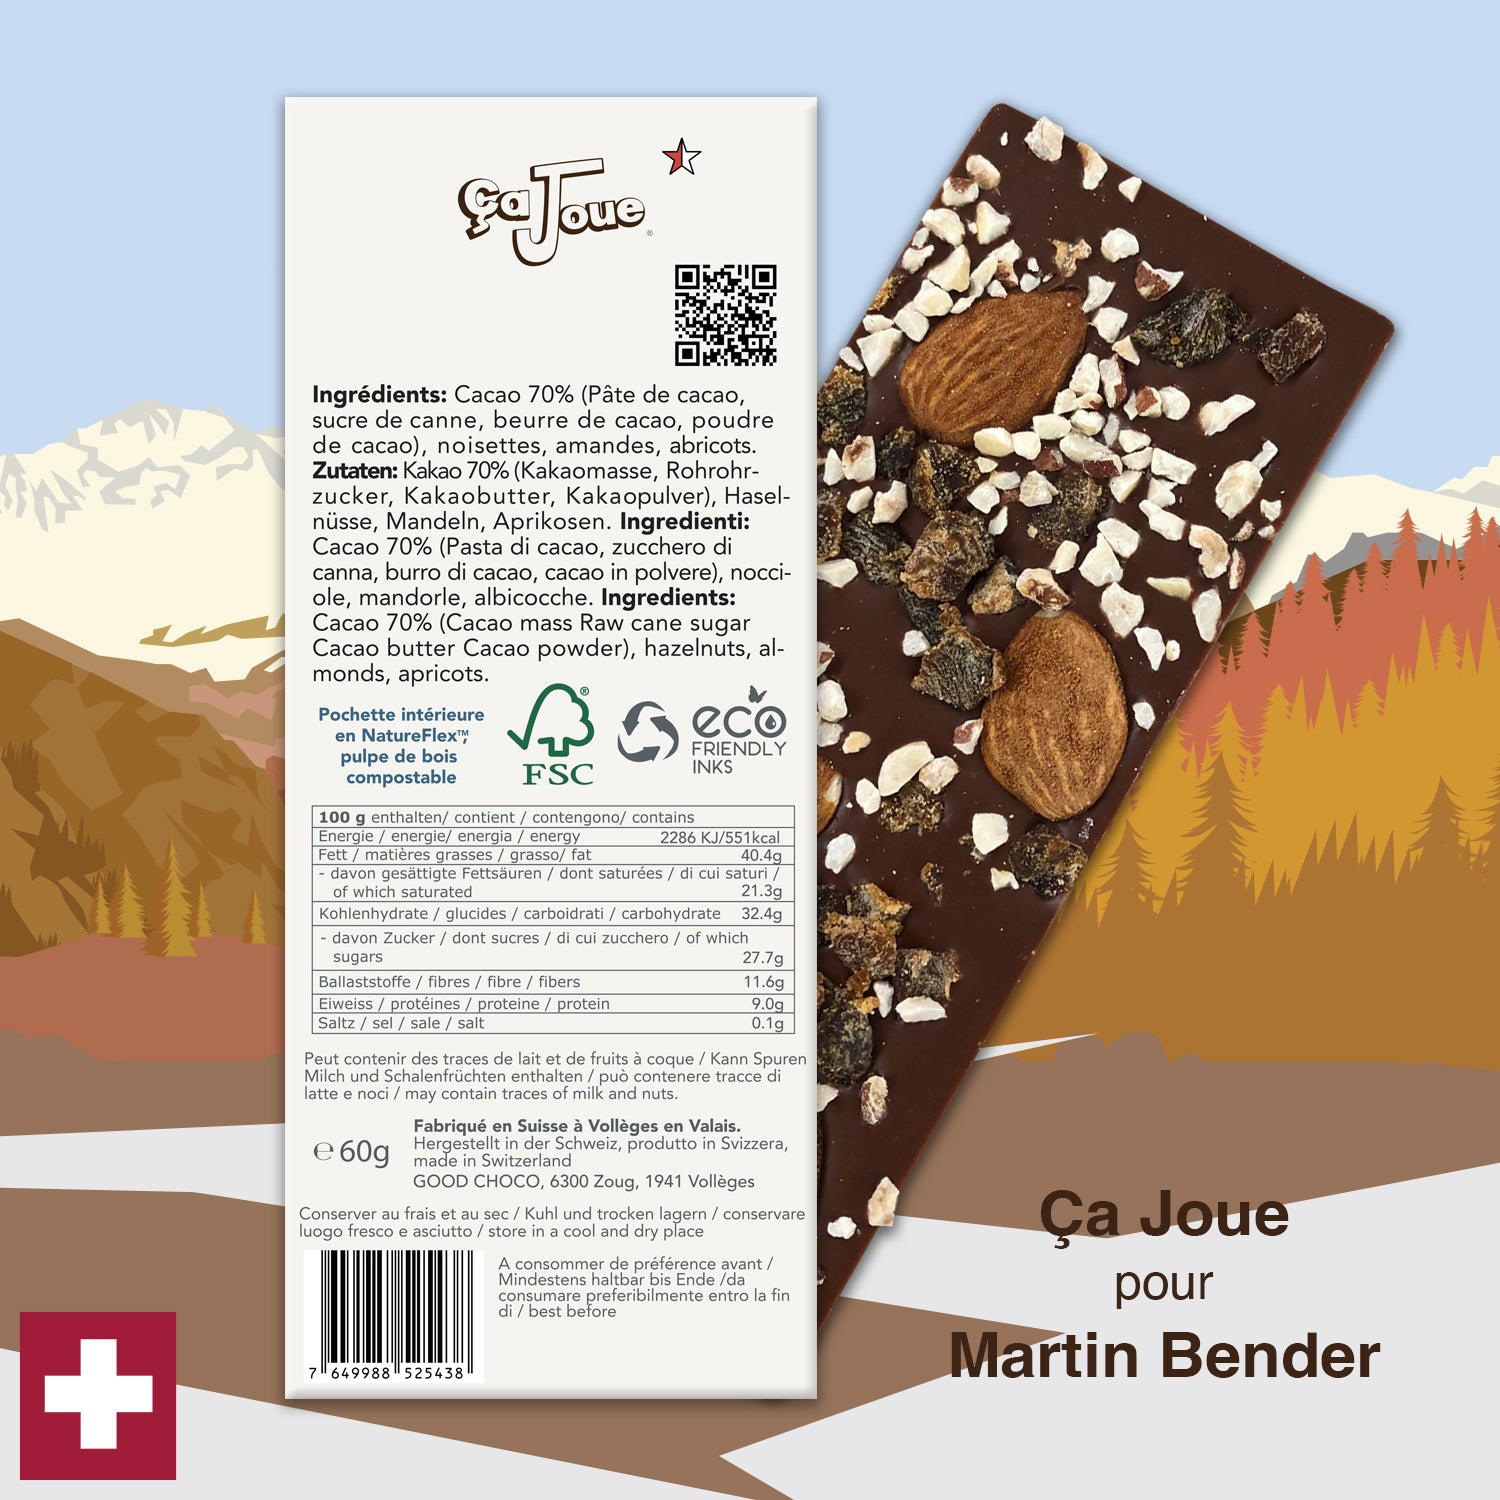 Ça Joue für Martin Bender (Ref-BN12) Schokolade aus Val de Bagnes